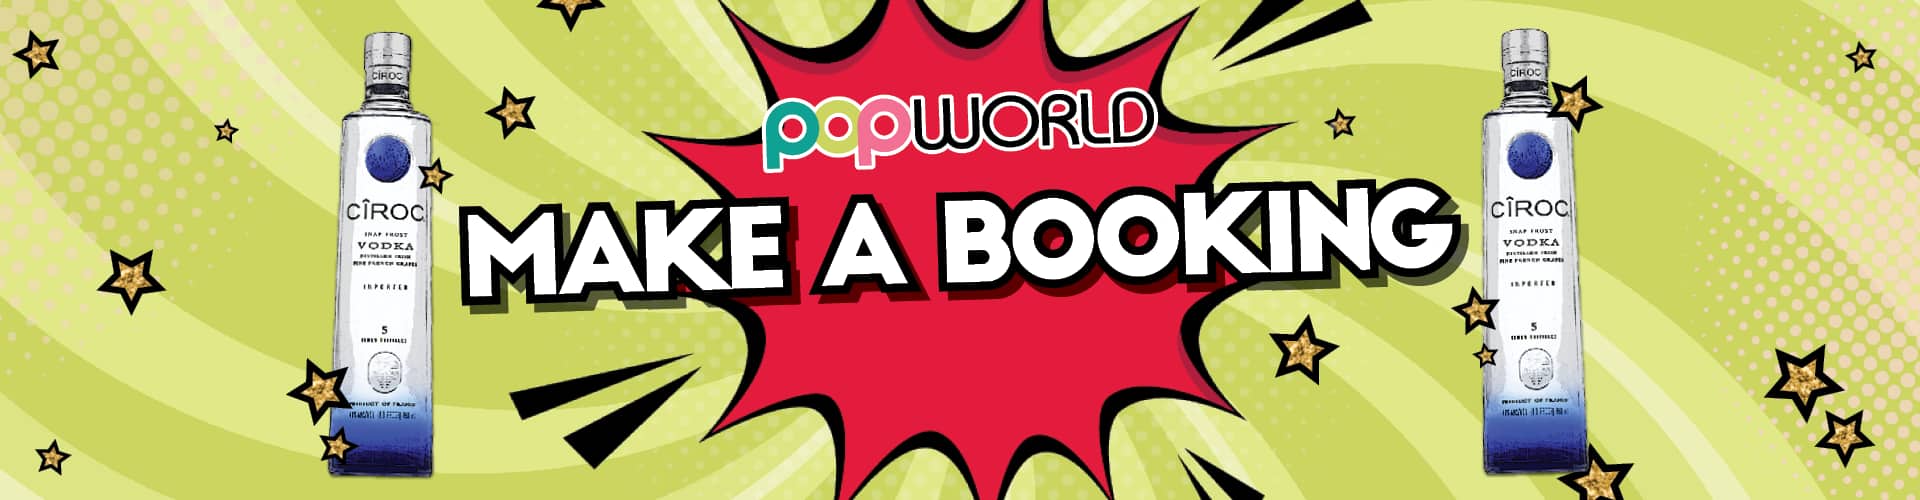 Make a Booking at Popworld